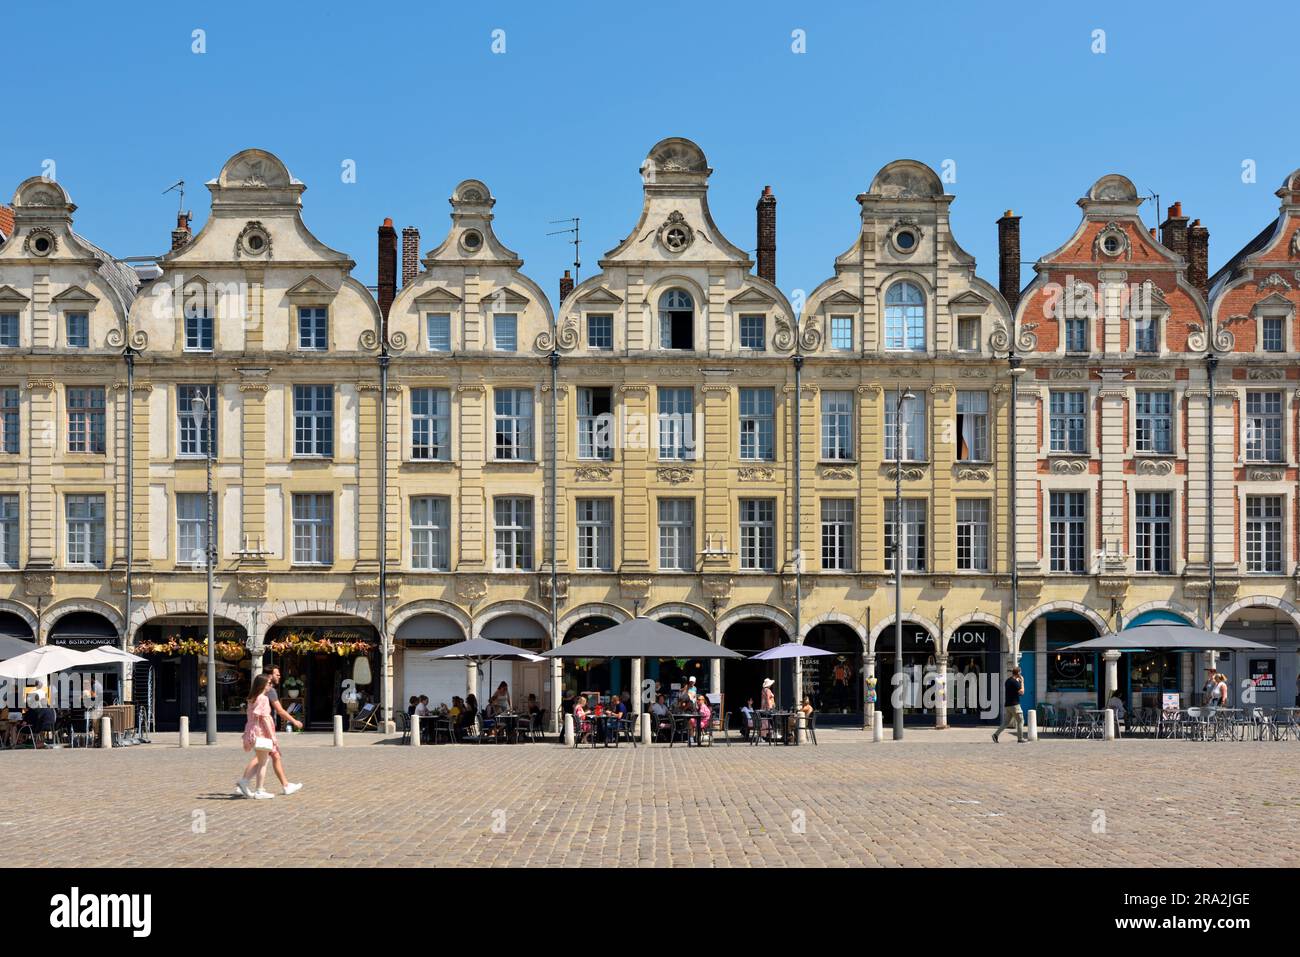 Francia, Pas de Calais, Arras, Place des Héros, casas de estilo barroco flamenco y cafés en la acera Foto de stock